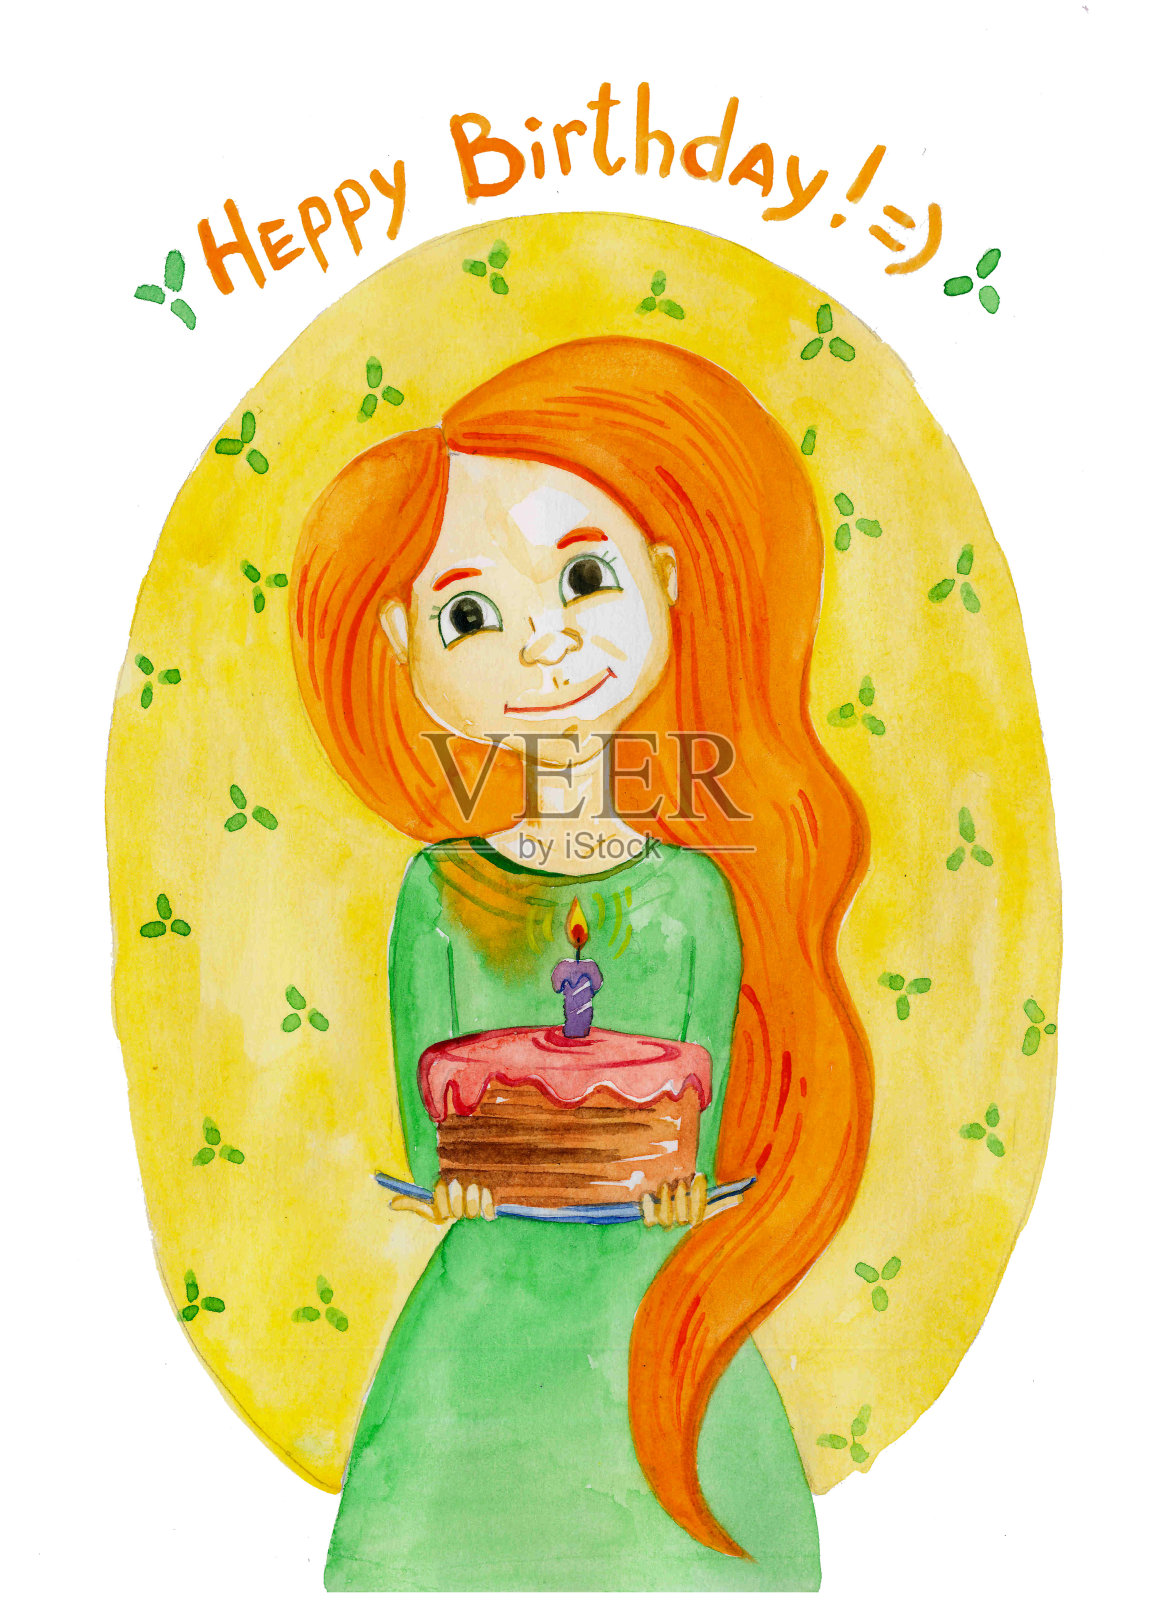 水彩画的女孩与生日蛋糕。生日贺卡设计模板素材